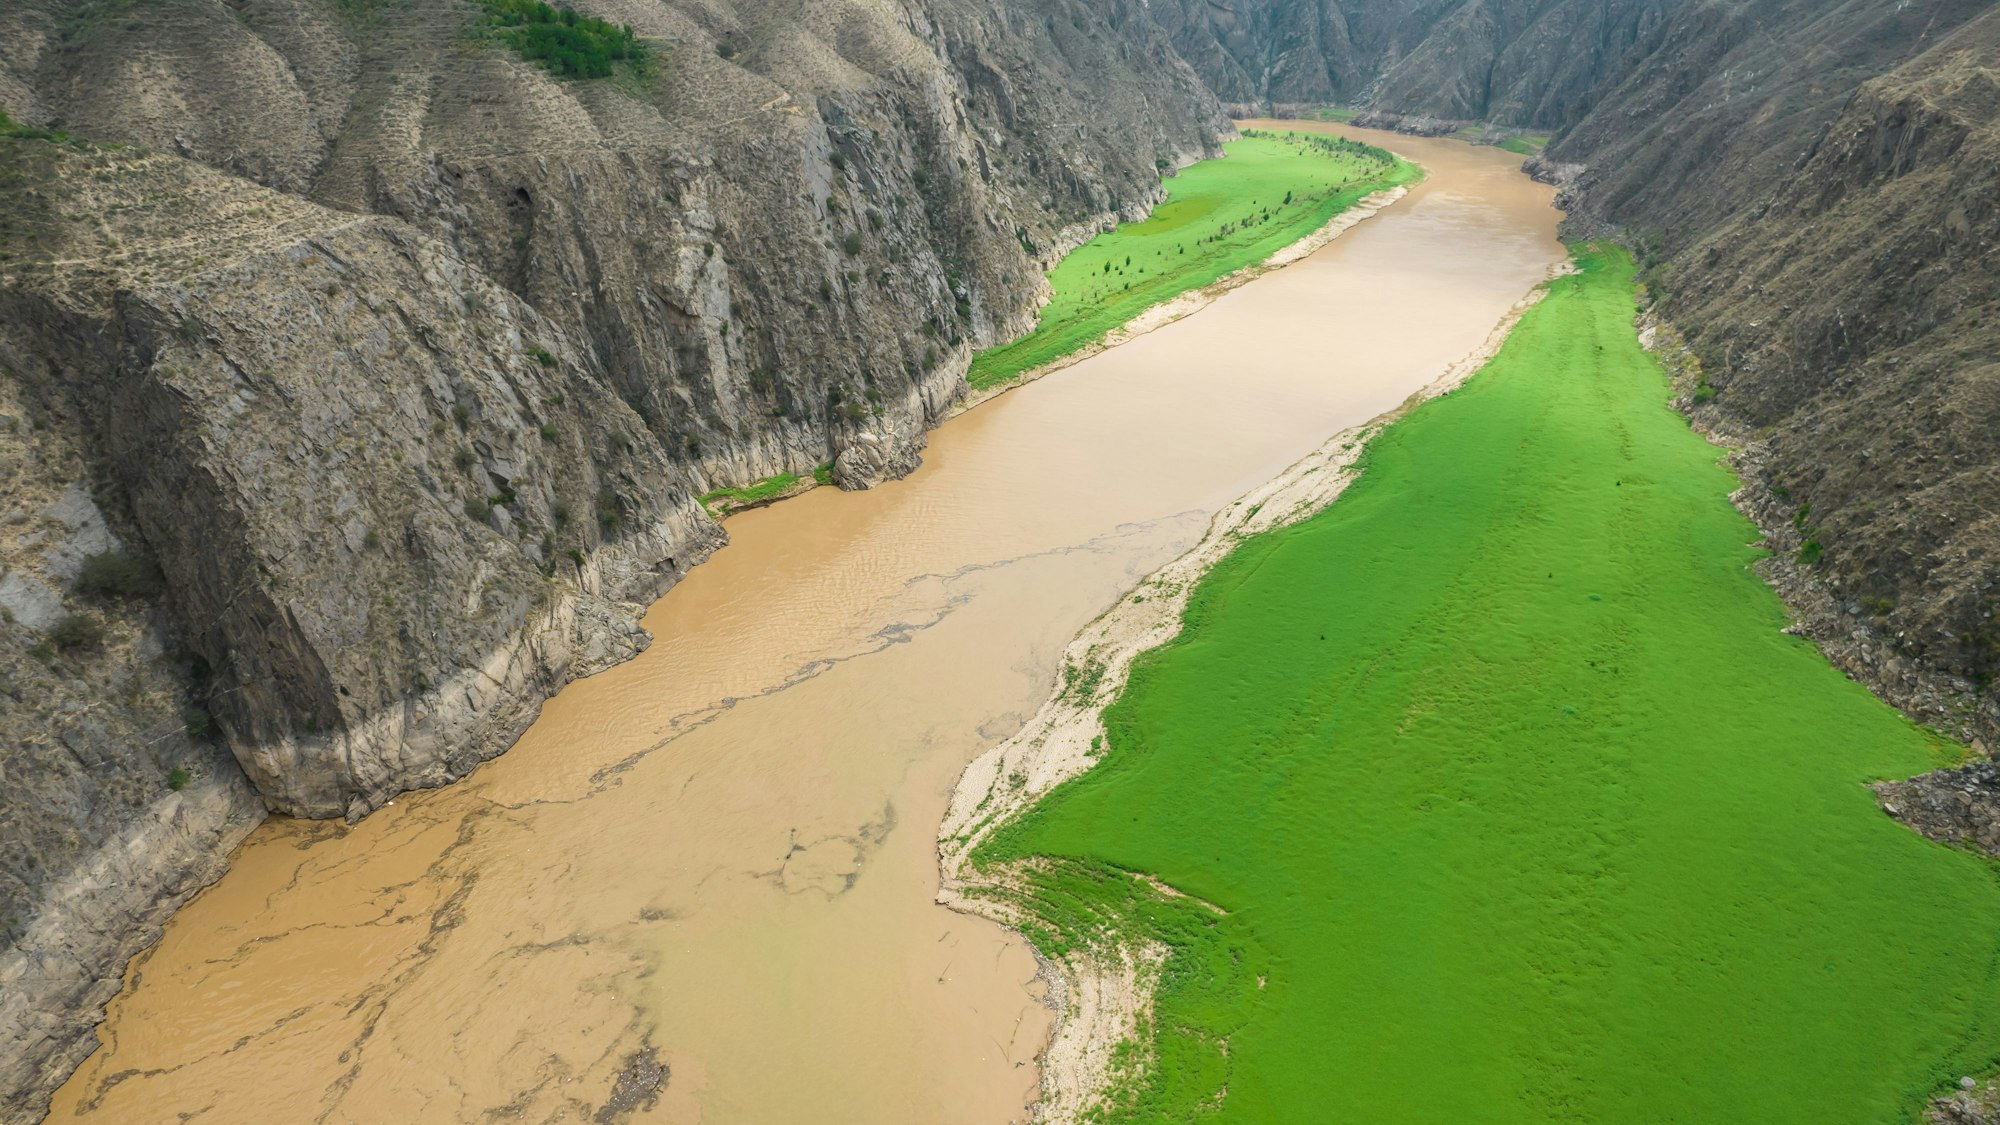 Die Farbe des Huang He (Gelber Fluss) ändert sich von grün zu gelb an der Mündung des Tao-Flusses.